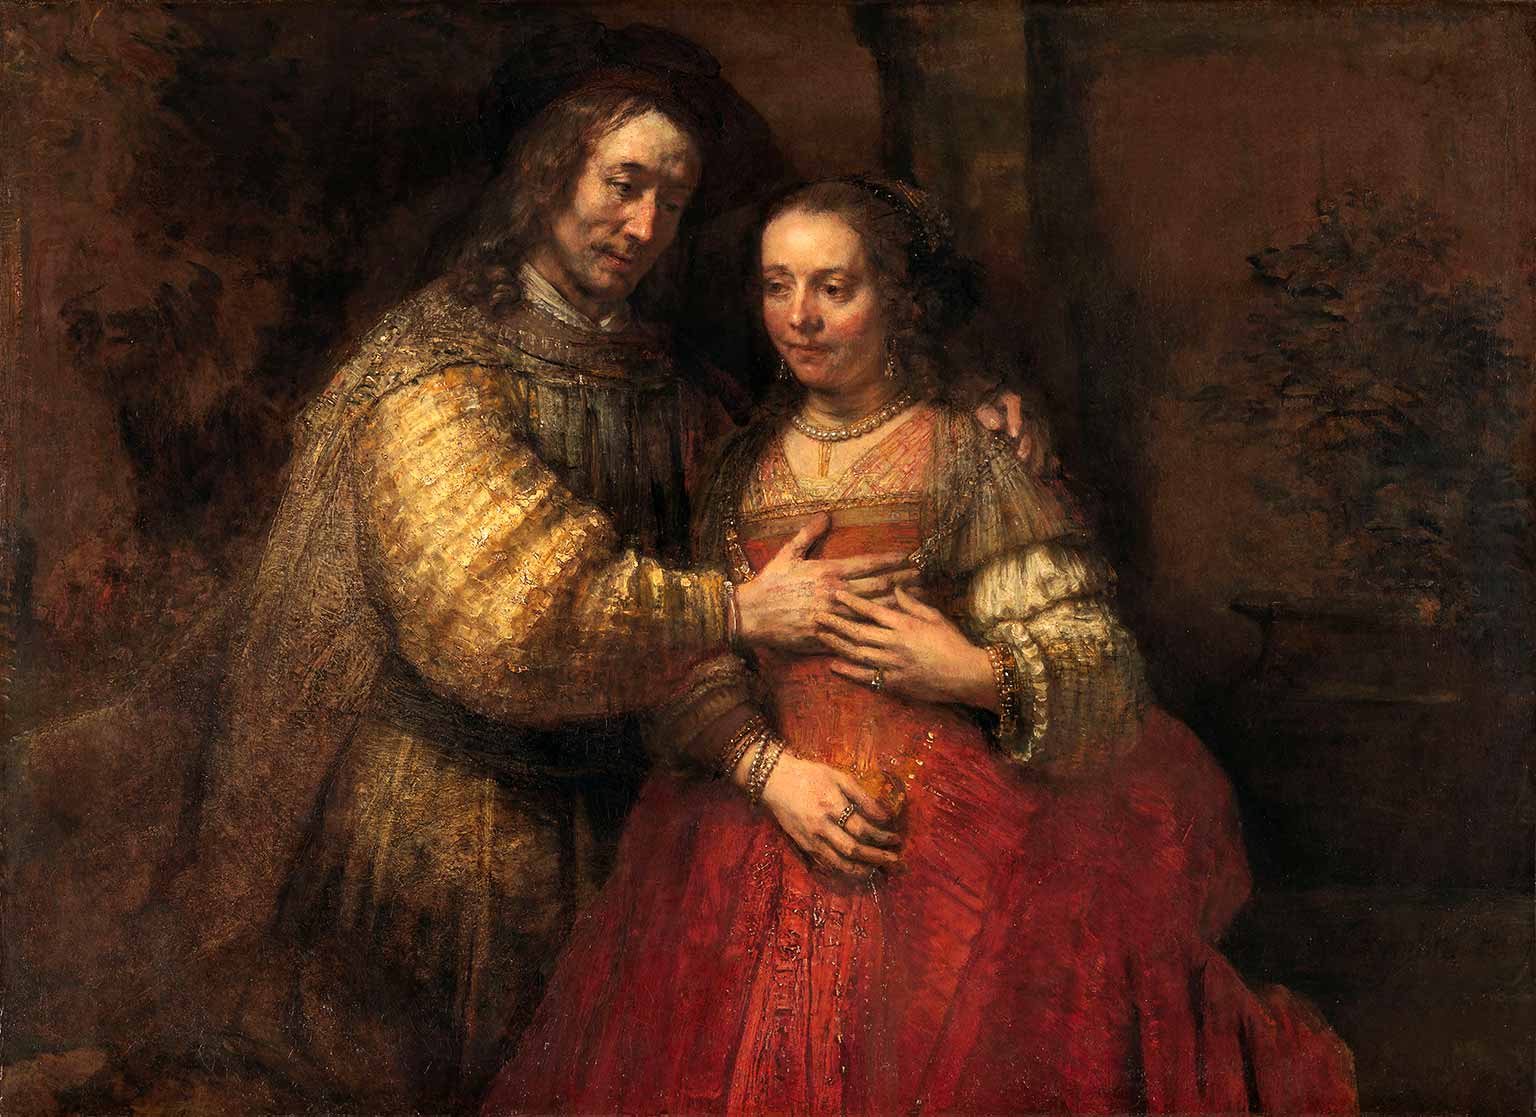 Het Joodse Bruidje, schilderij van Rembrandt van Rijn van rond 1665-1669